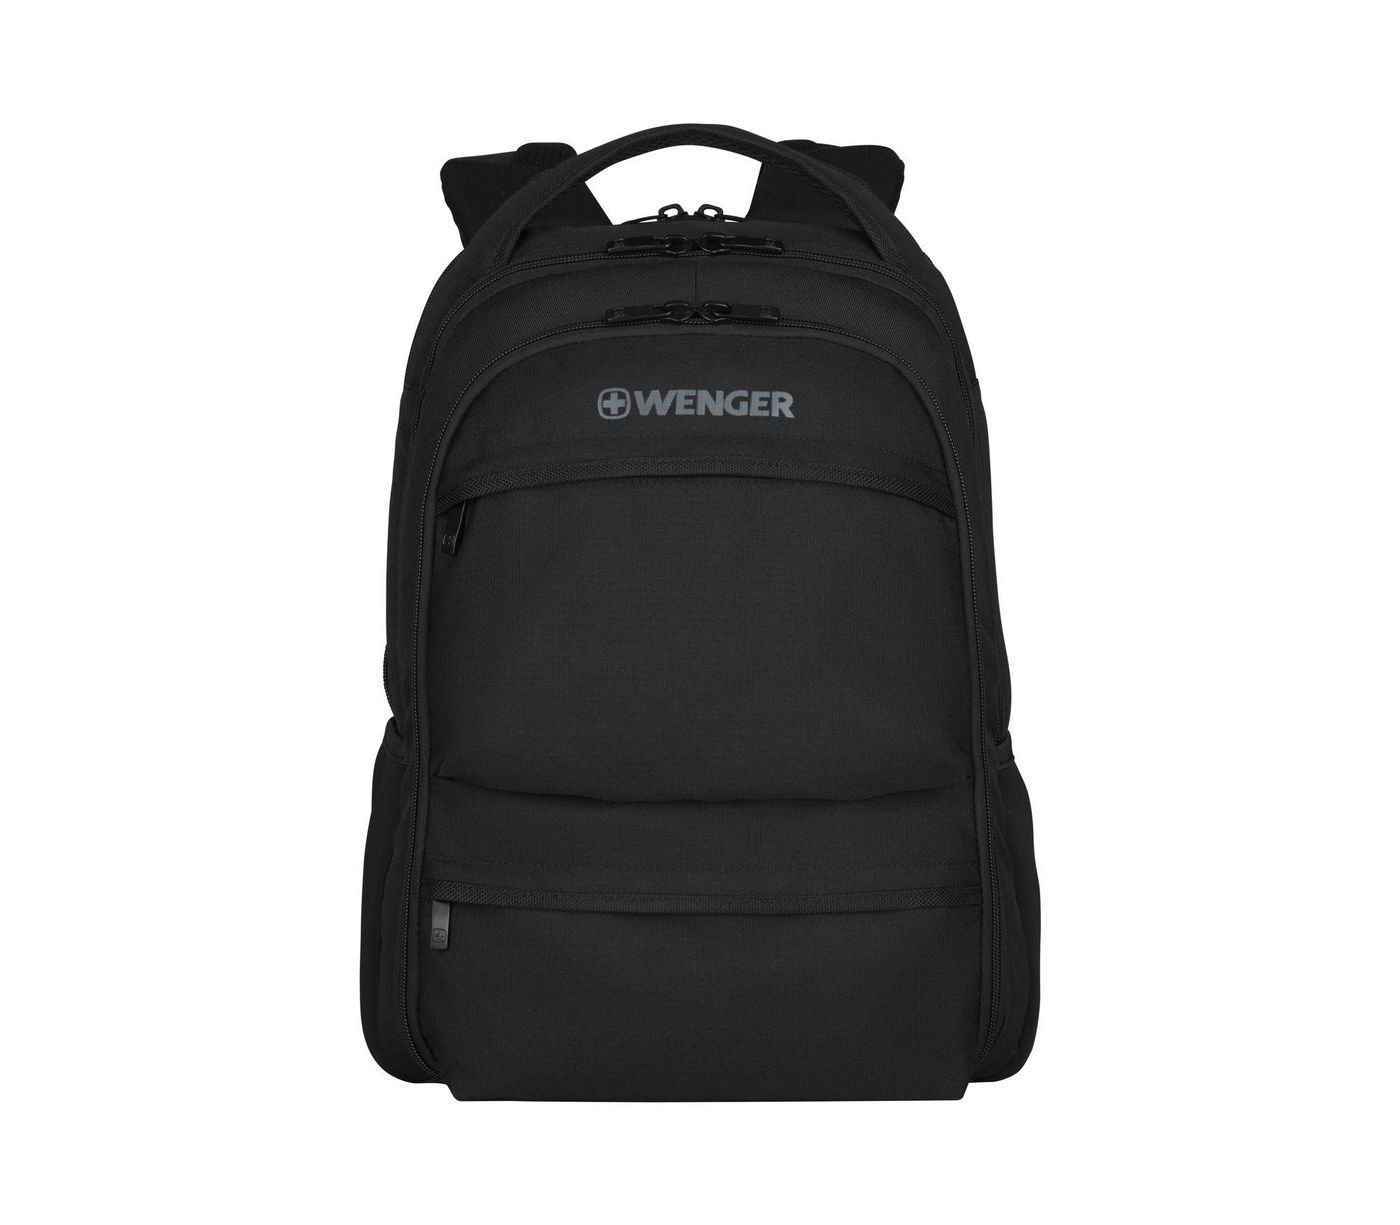 Wenger 600630 W128263240 Fuse Backpack Black Neoprene 